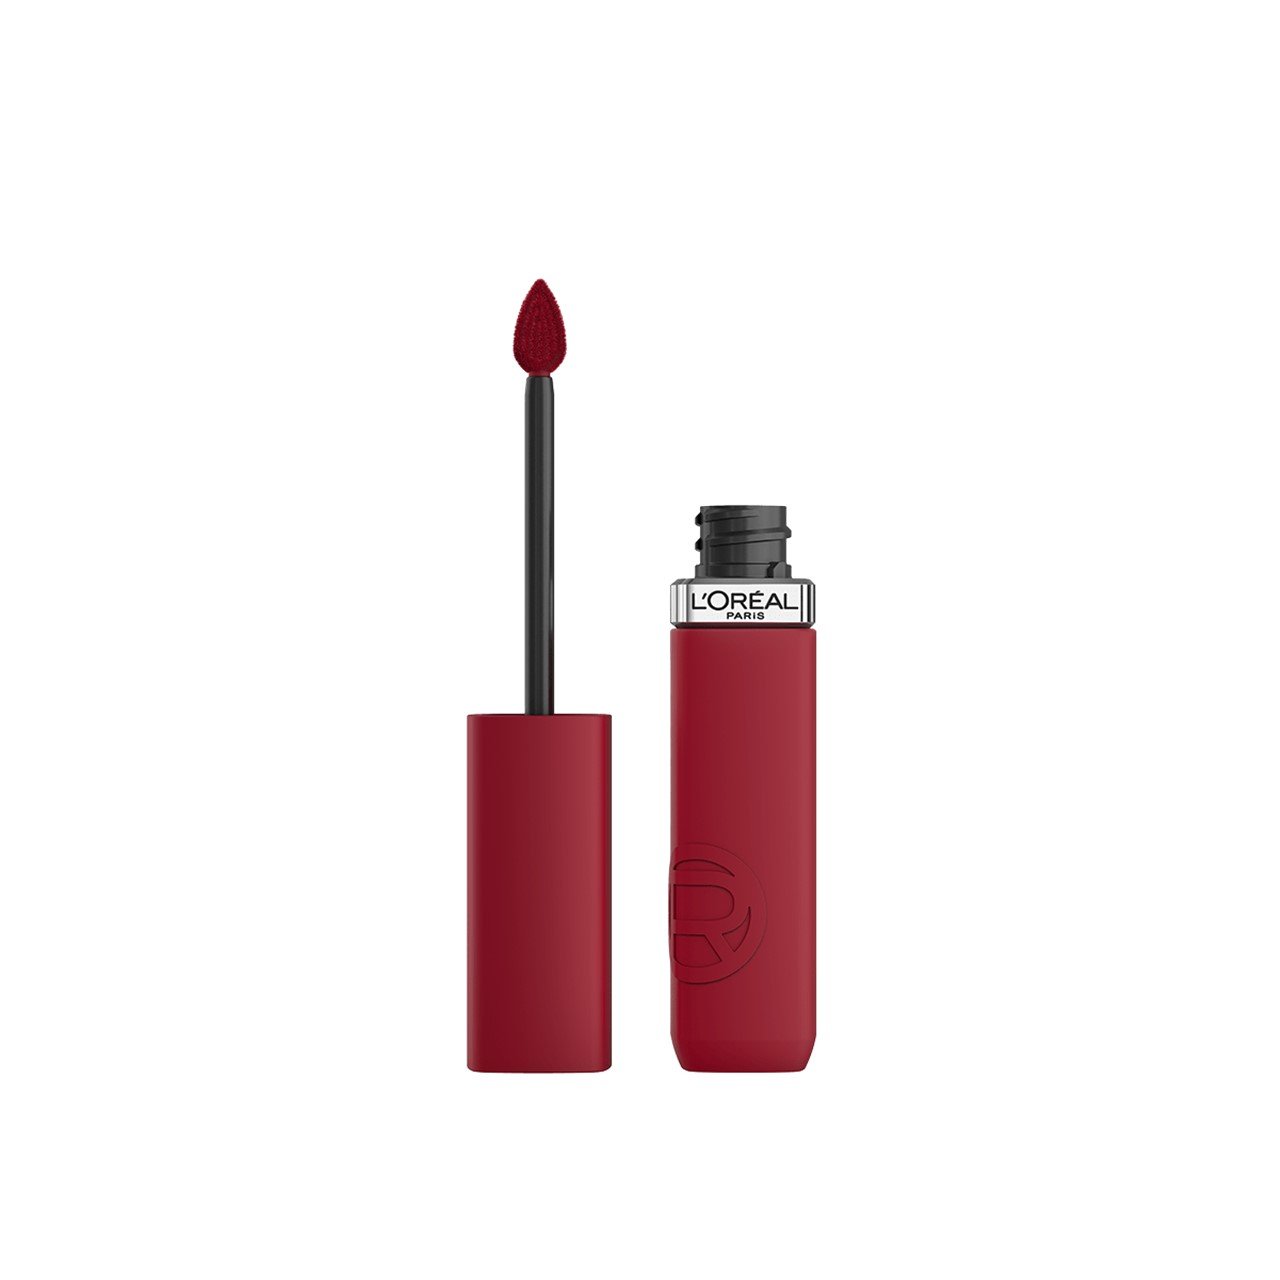 L'Oréal Paris Infallible Matte Resistance Liquid Lipstick 420 Le Rouge Paris 5ml (0.17 fl oz)